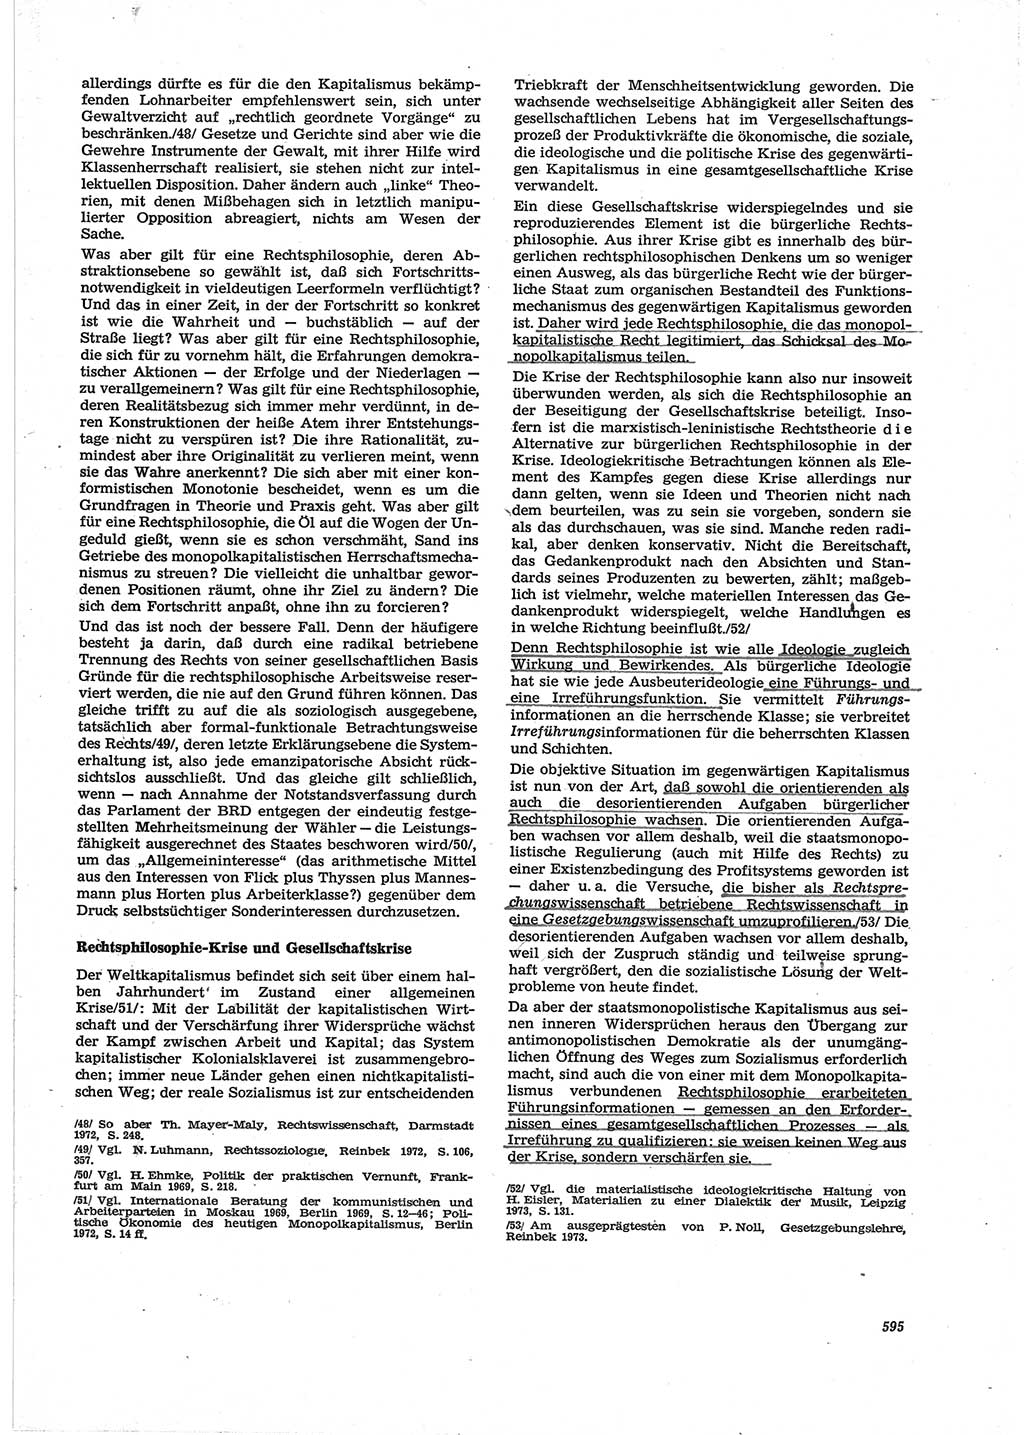 Neue Justiz (NJ), Zeitschrift für Recht und Rechtswissenschaft [Deutsche Demokratische Republik (DDR)], 28. Jahrgang 1974, Seite 595 (NJ DDR 1974, S. 595)